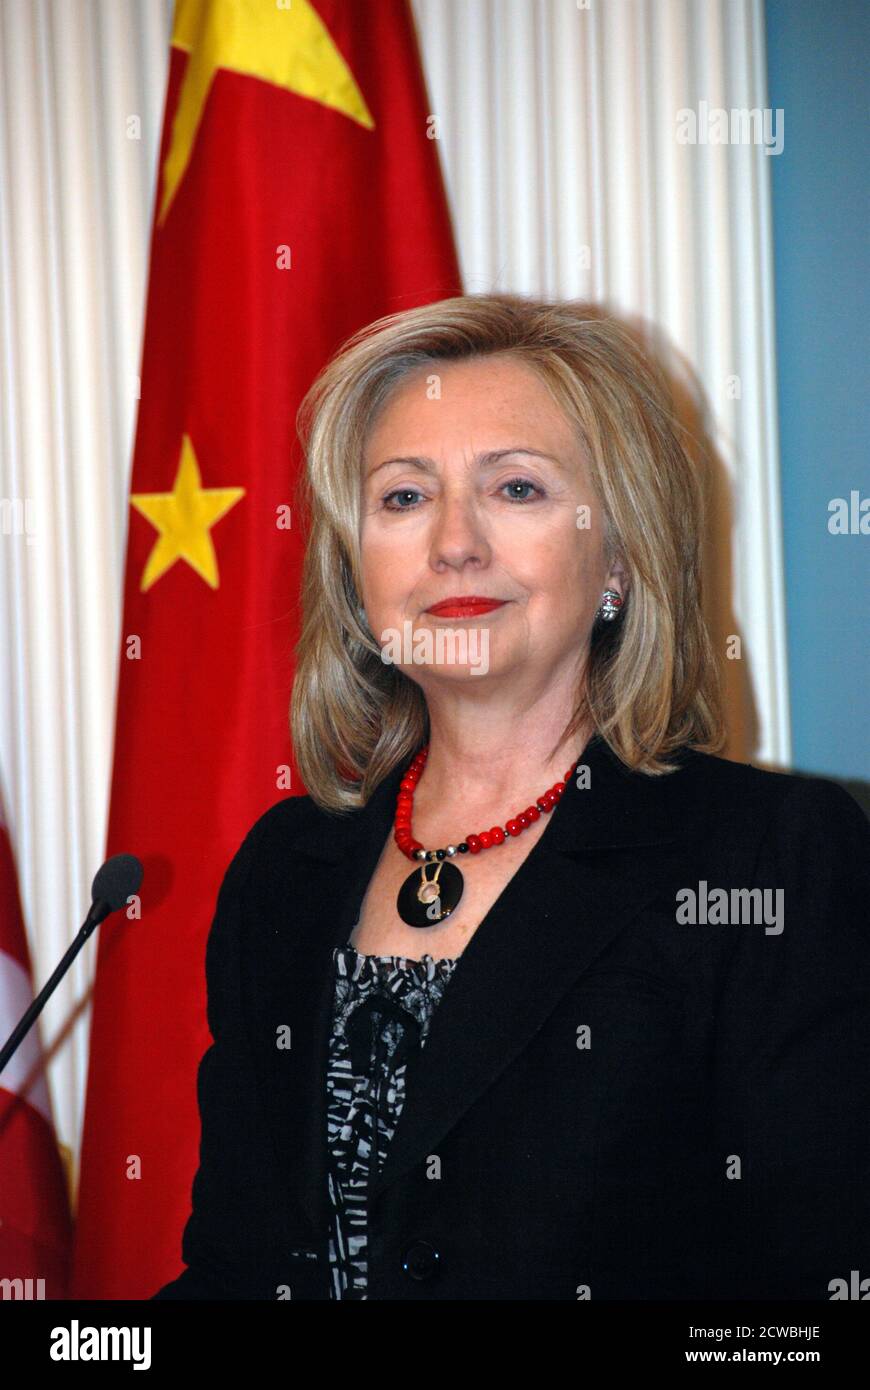 Fotografia di Hilary Clinton che parla come Segretario di Stato degli Stati Uniti. Hillary Diane Rodham Clinton (1947-) un politico, diplomatico, avvocato, scrittore e oratore pubblico americano. Foto Stock